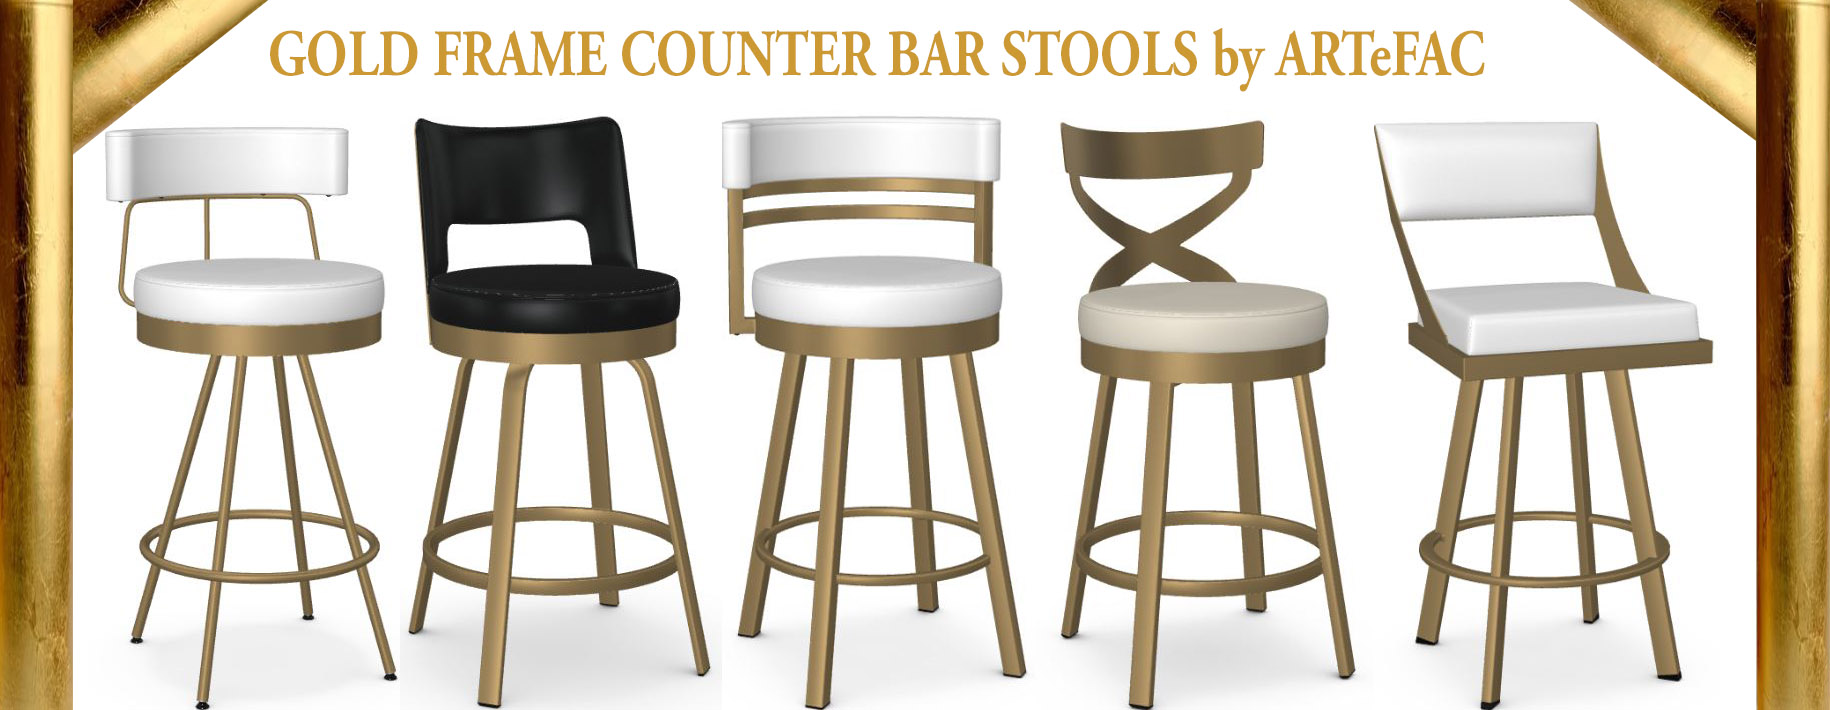 Chairs Bar Stools In Usa Artefac, Google Bar Stools